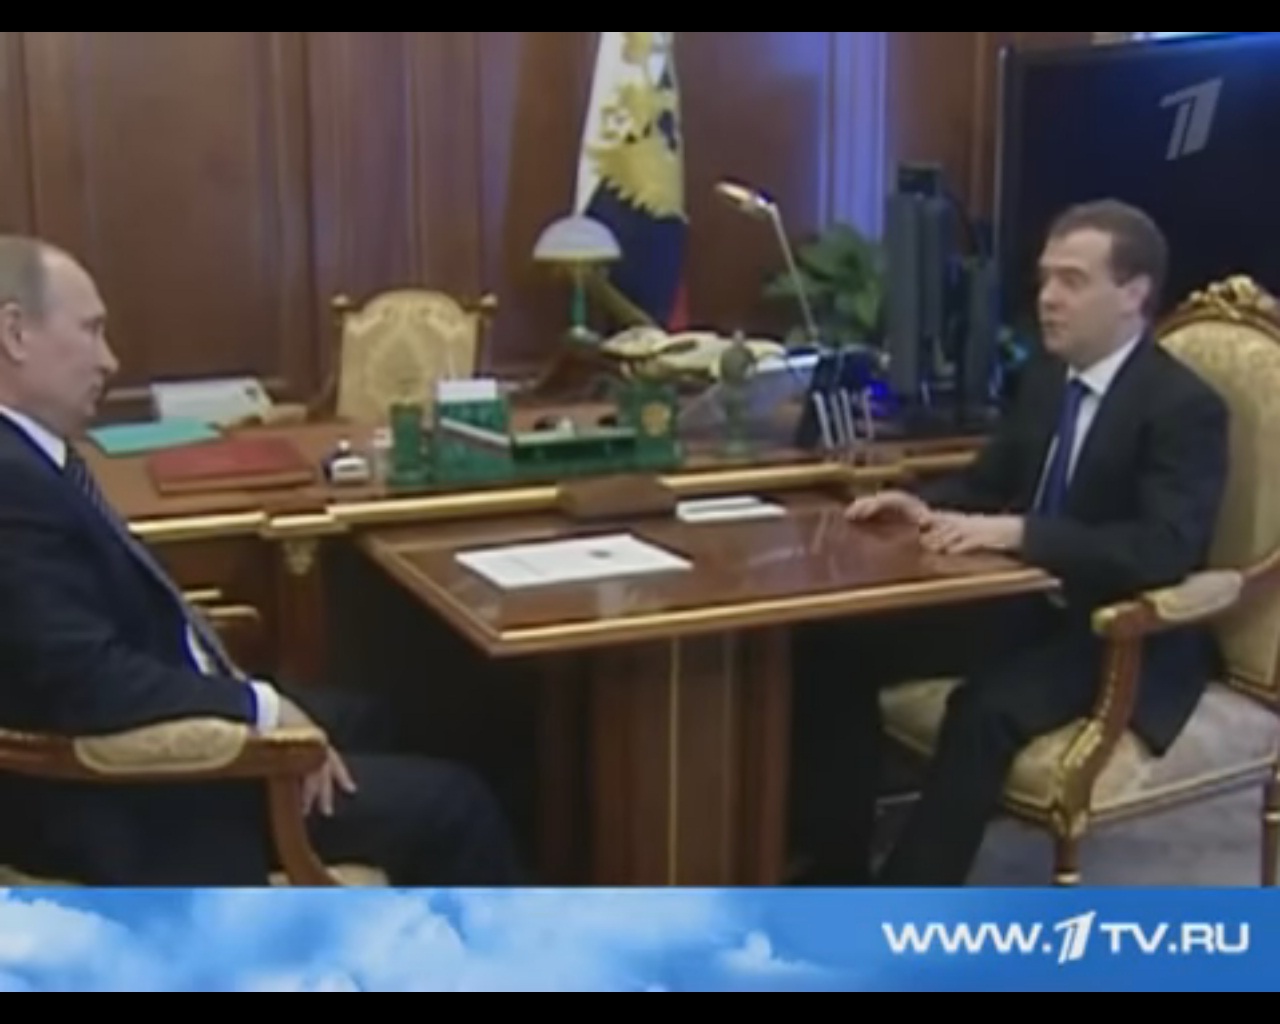 РАЗРЫВ ИНТЕРНЕТА! Путин так орал на Медведева, что премьер не удержался и громко перднул (ВИДО)